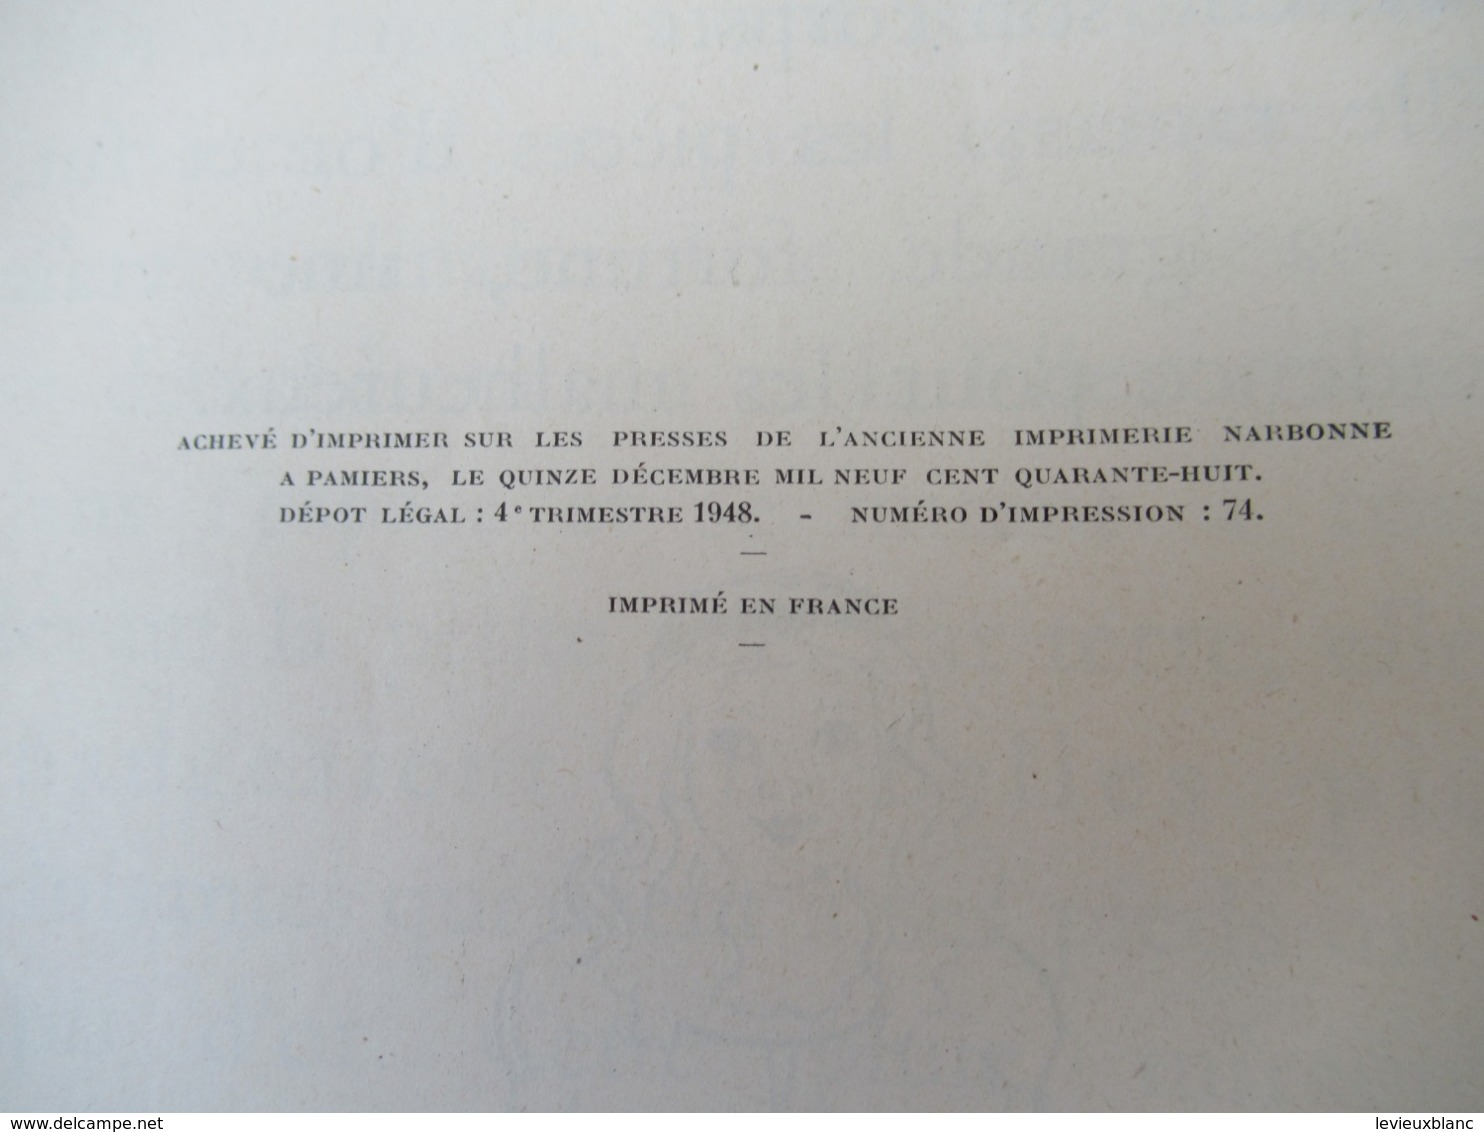 Contes d'Antan et de toujours / L'OURS et le ROITELET/ La PLUIEd'OR /Editeur Didier/ GRIMM/1948       BD166